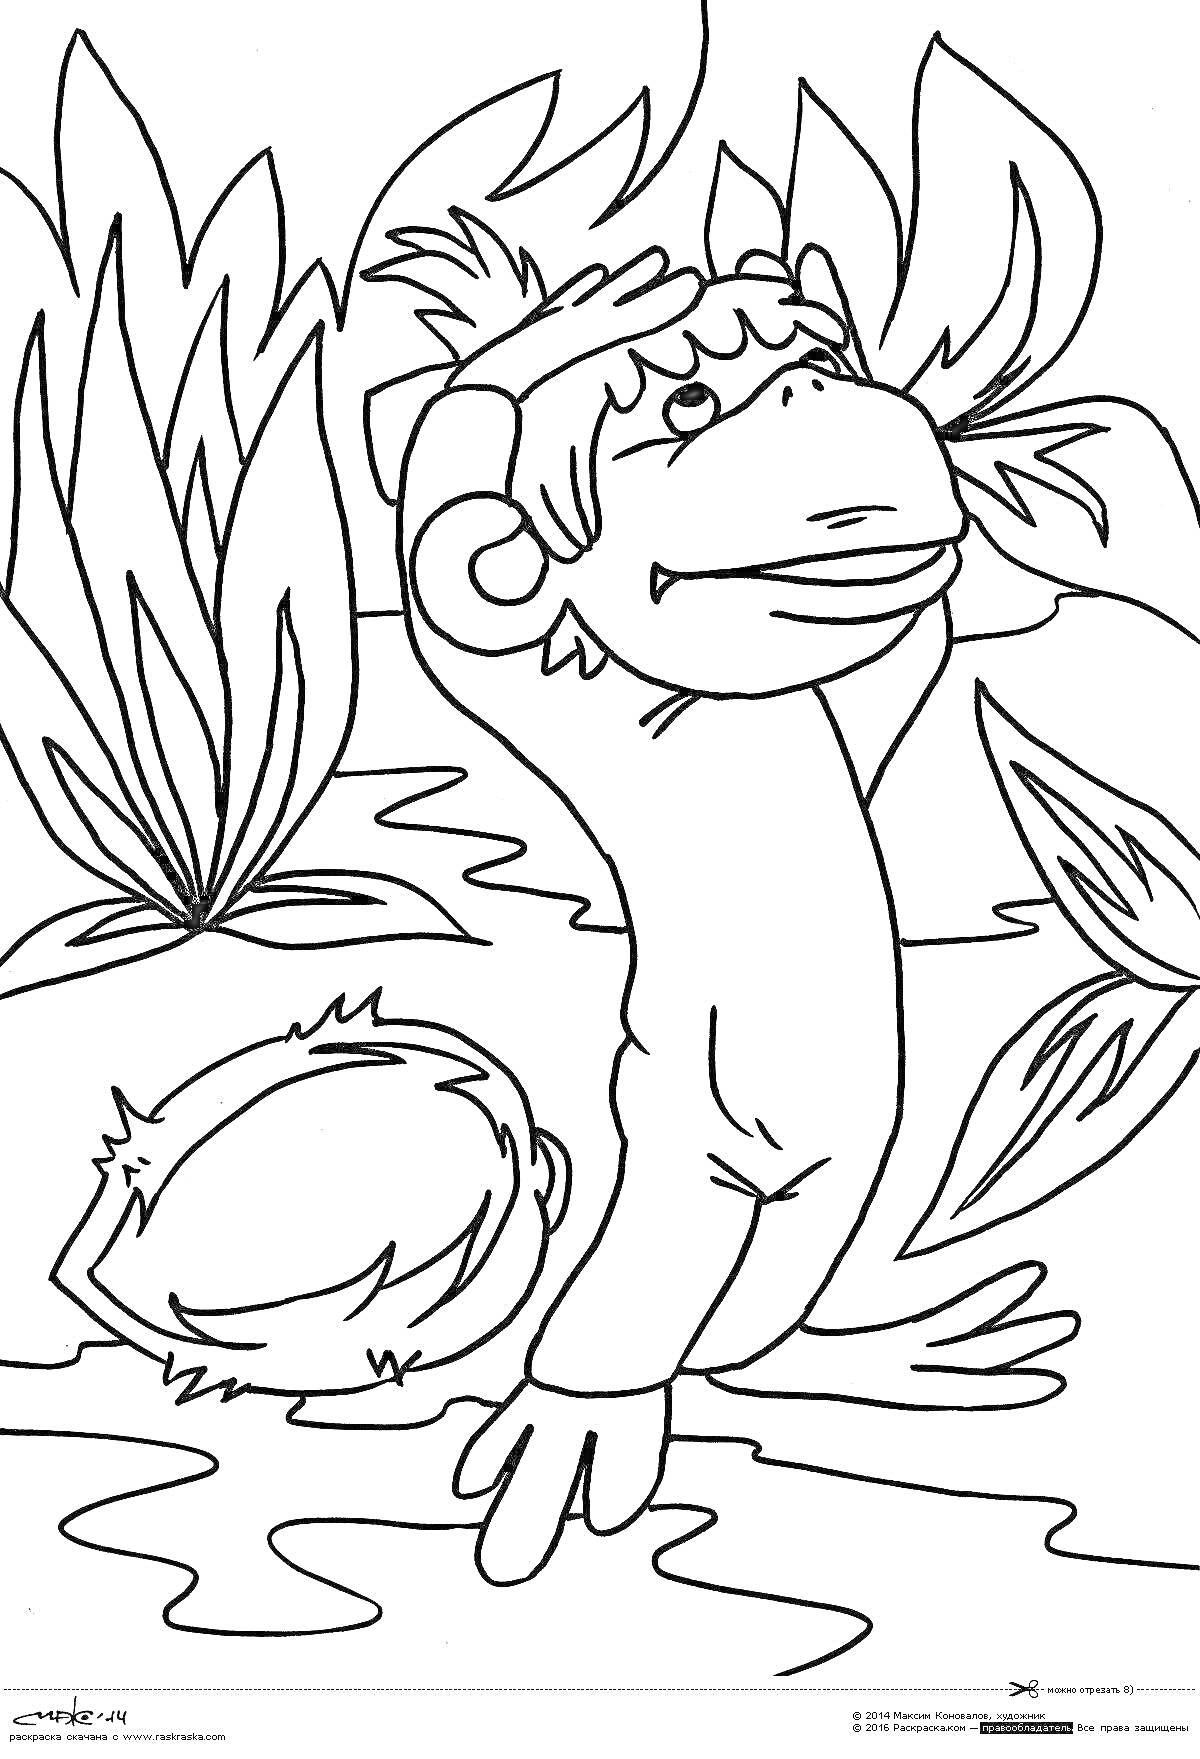 Раскраска финик, персонаж мультфильма, стоящий на берегу водоема среди трав и кустов